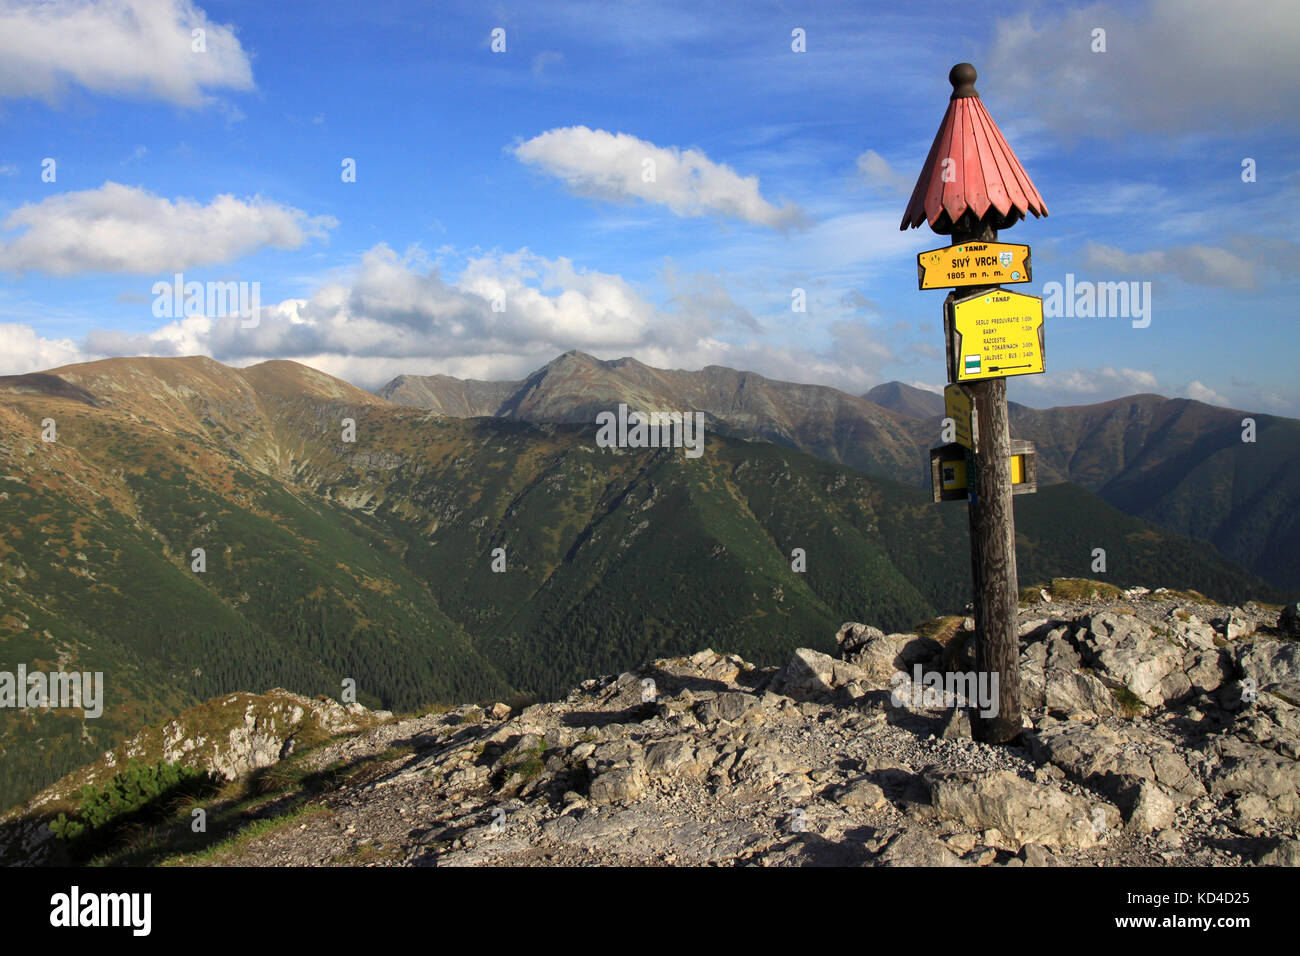 La cumbre de Sivy vrch y las vistas sobre las montañas de Tatra Salatin occidental (a la izquierda), Eslovaquia Foto de stock